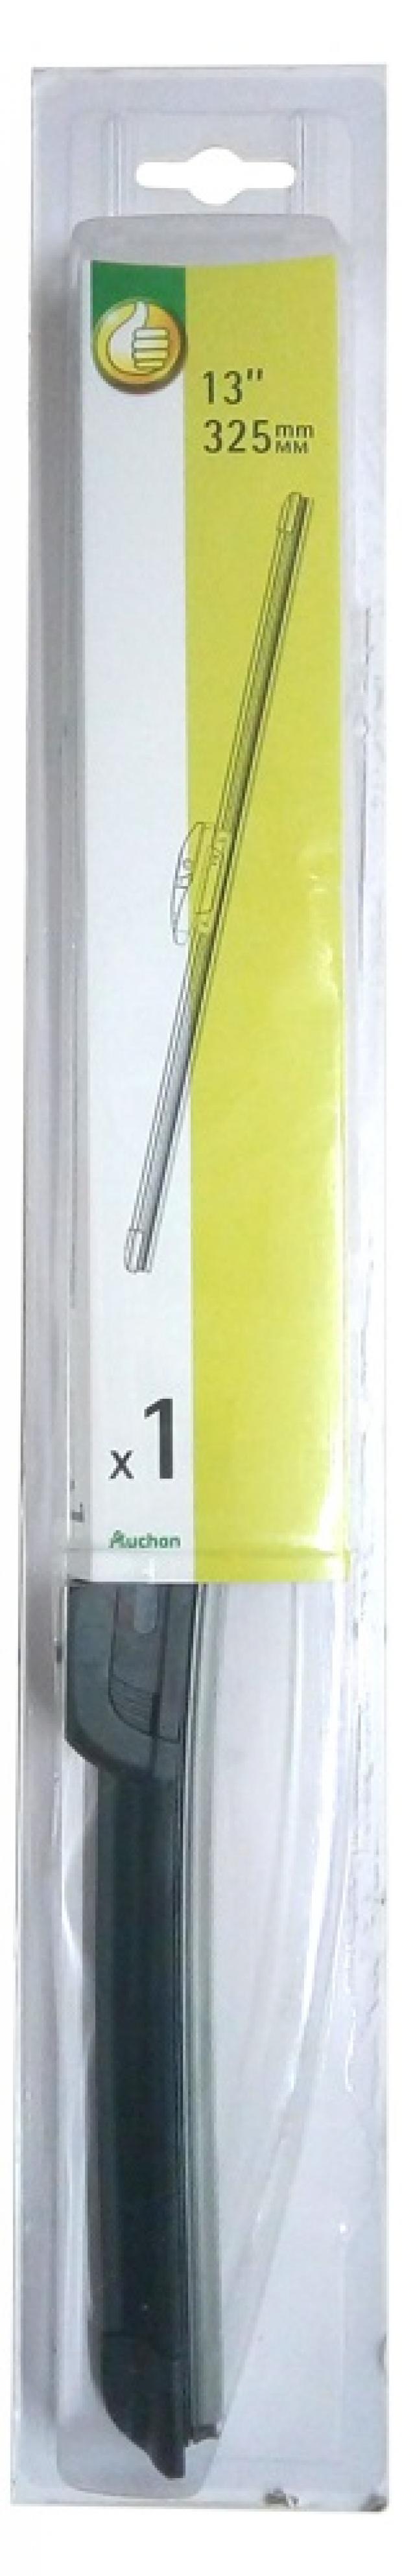 Щетка стеклоочистителя АШАН бескаркасная, 325 мм